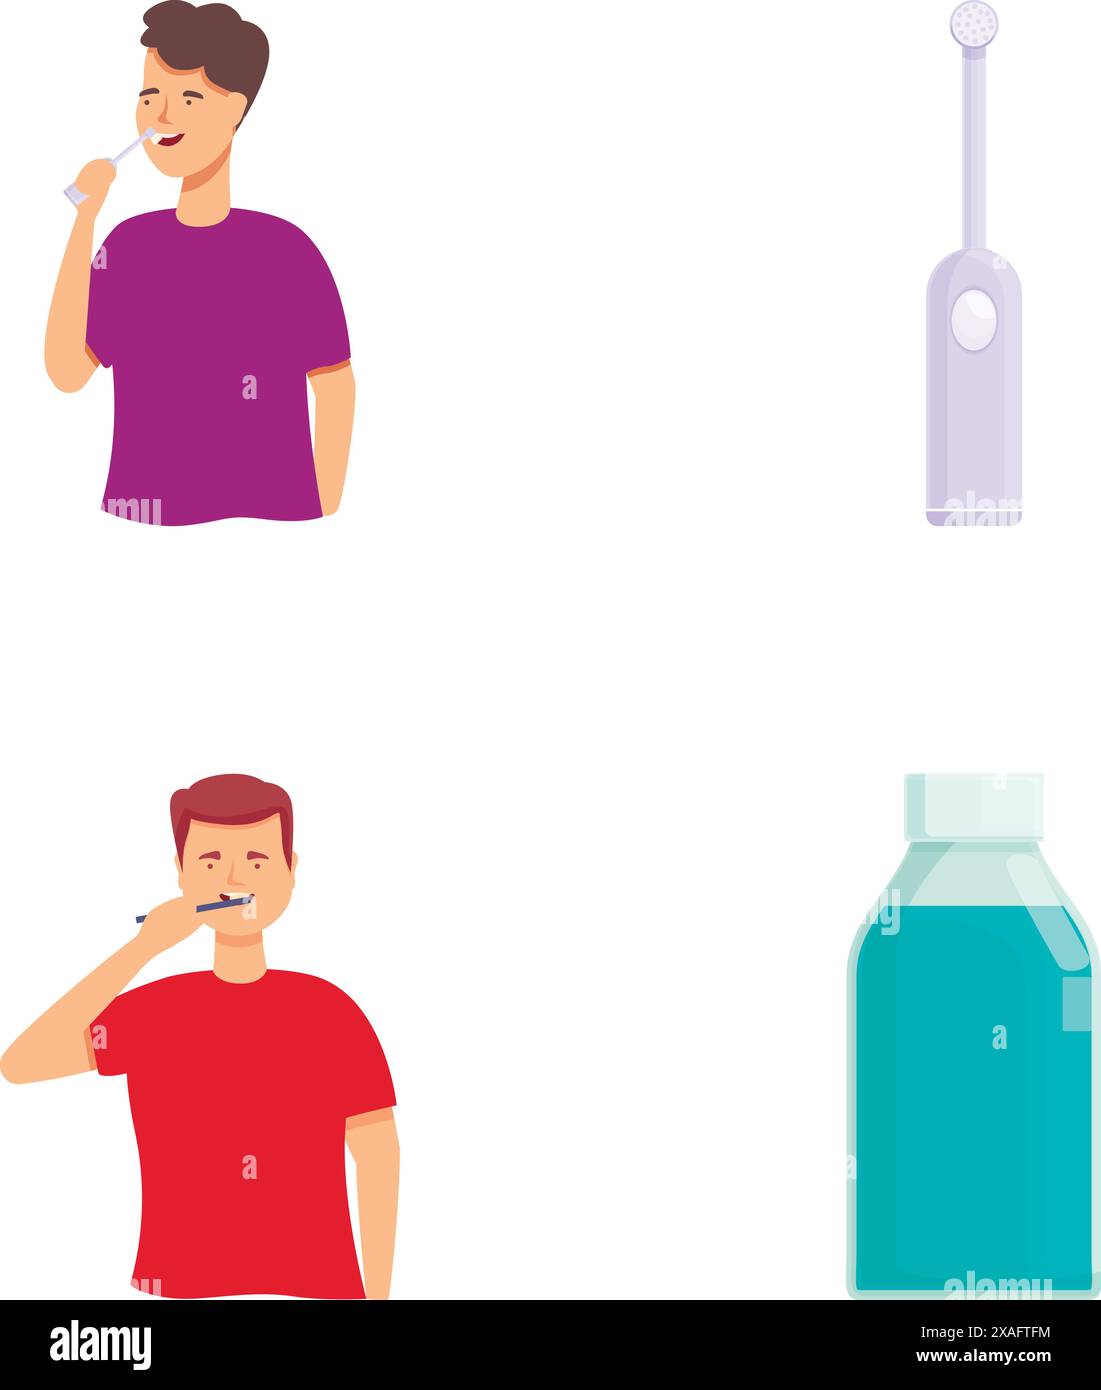 Serie di illustrazioni che mostrano una persona che pulisce denti e articoli per l'igiene dentale Illustrazione Vettoriale